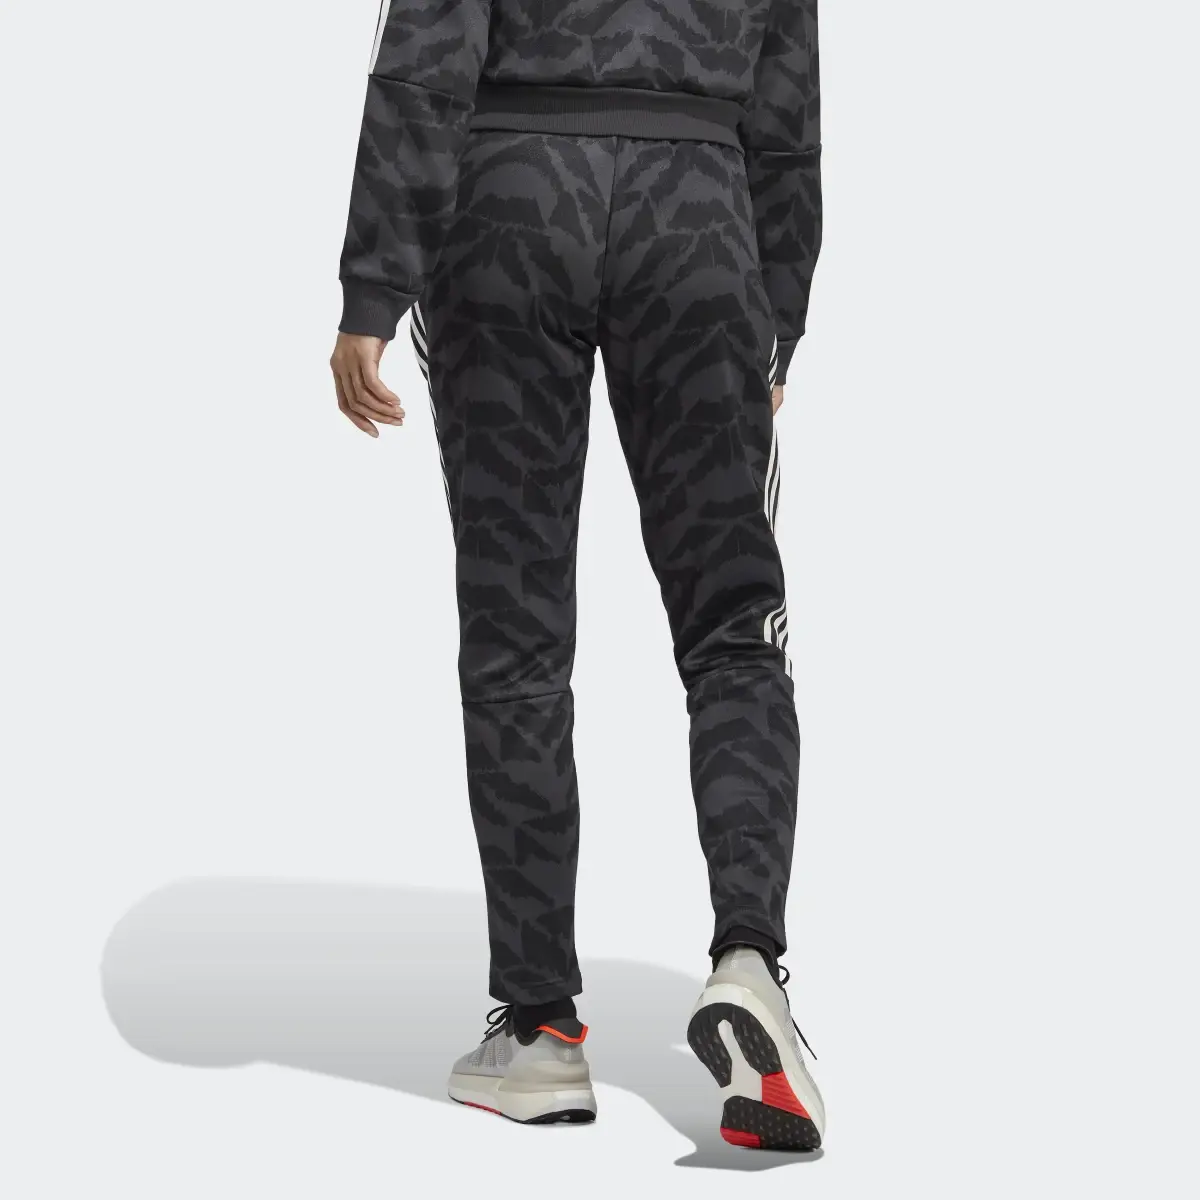 Adidas Tiro Suit Up Lifestyle Track Pant. 2